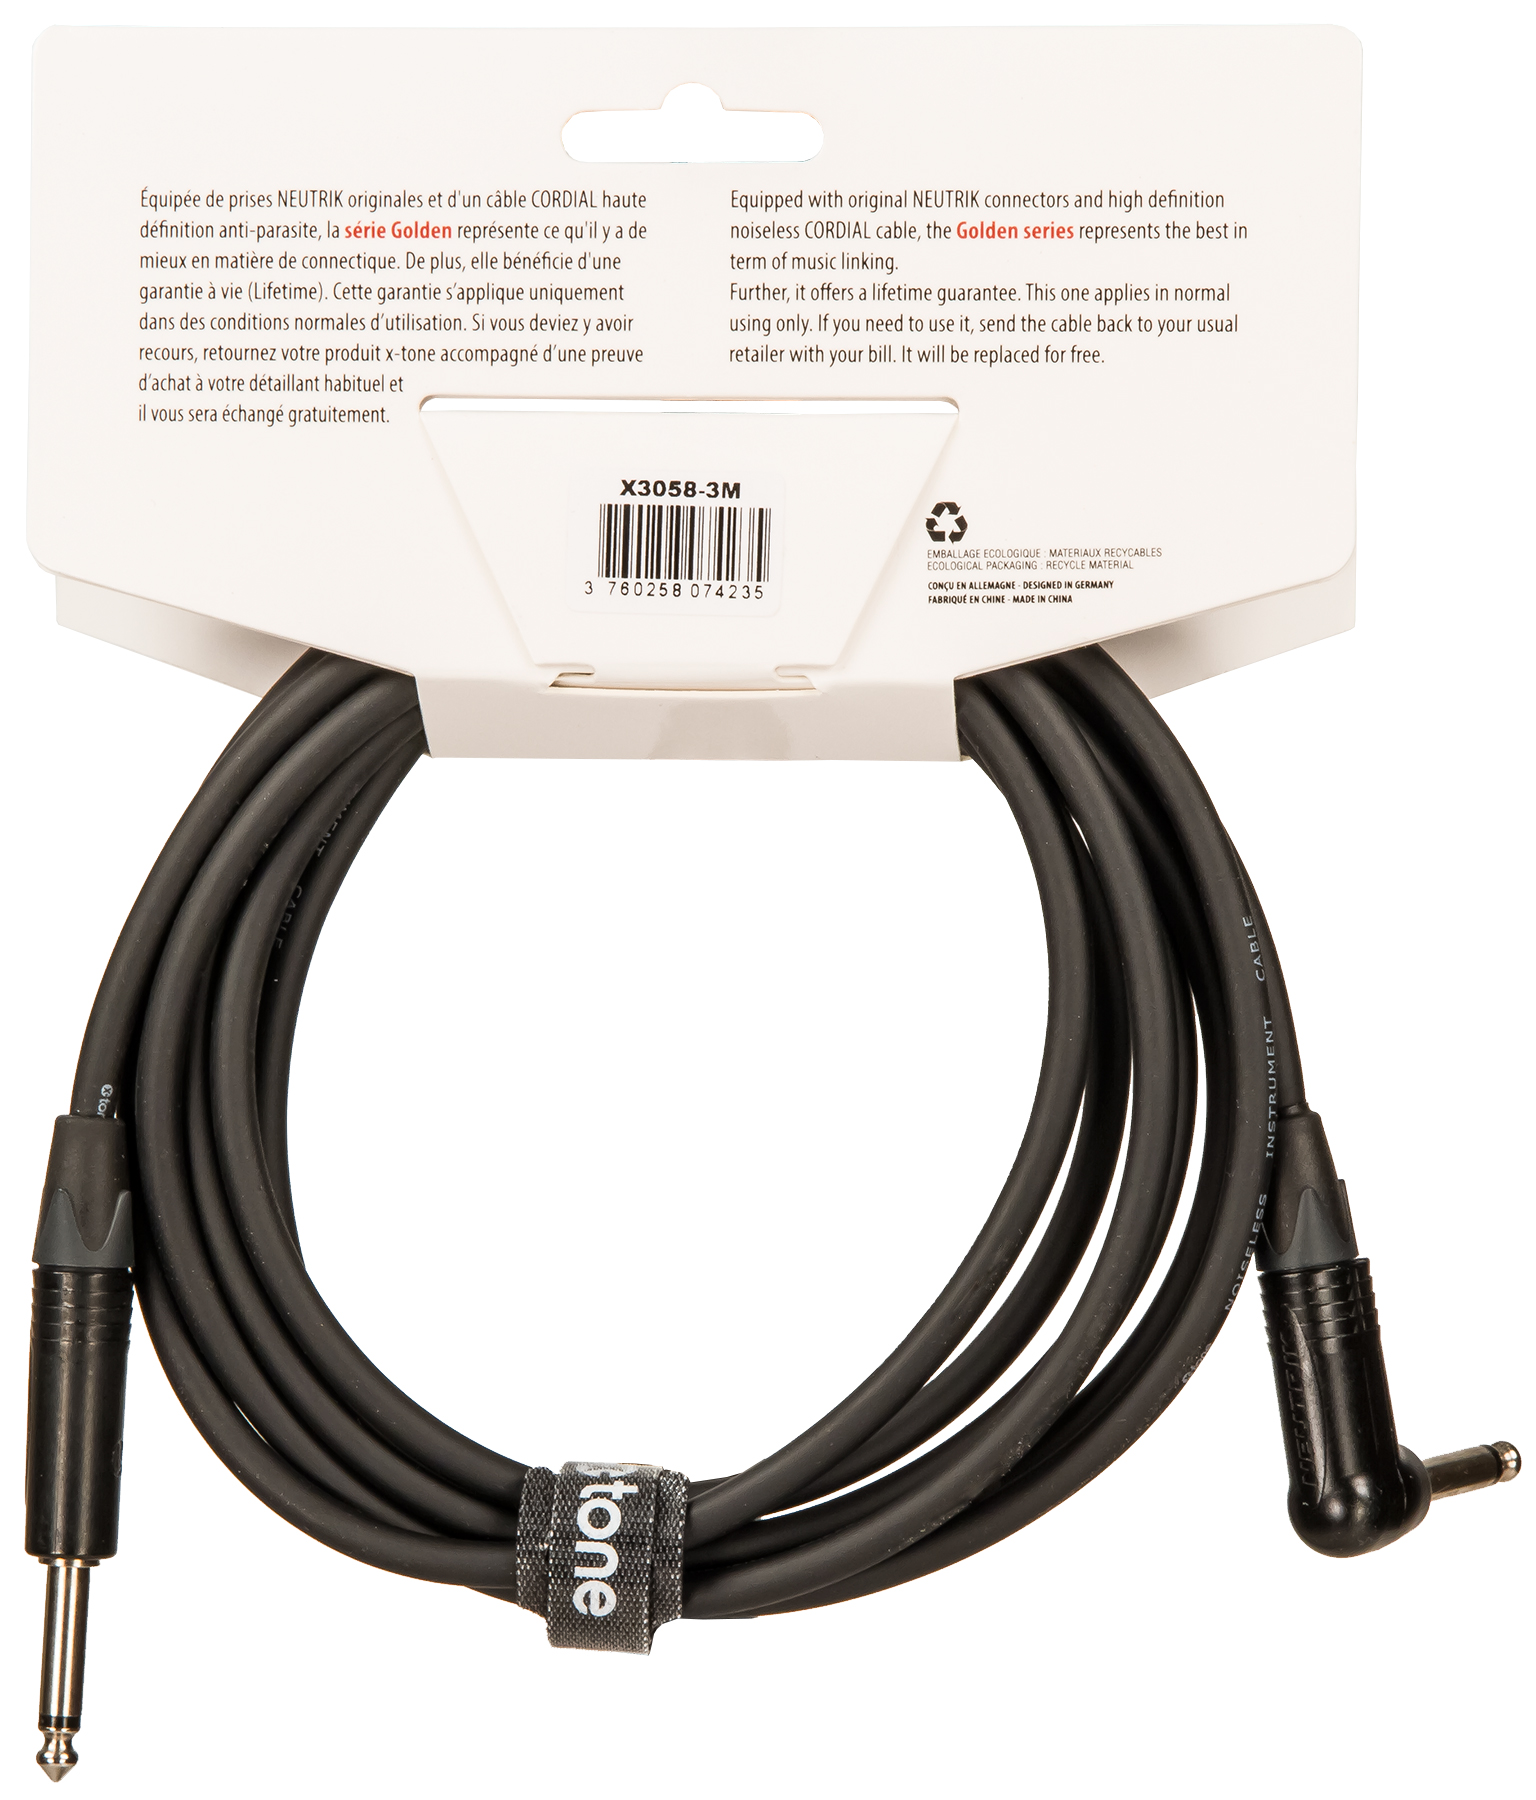 X-tone X3058-3m Instrument Cable Golden Neutrik Droit/coude 3m - Cable - Variation 1